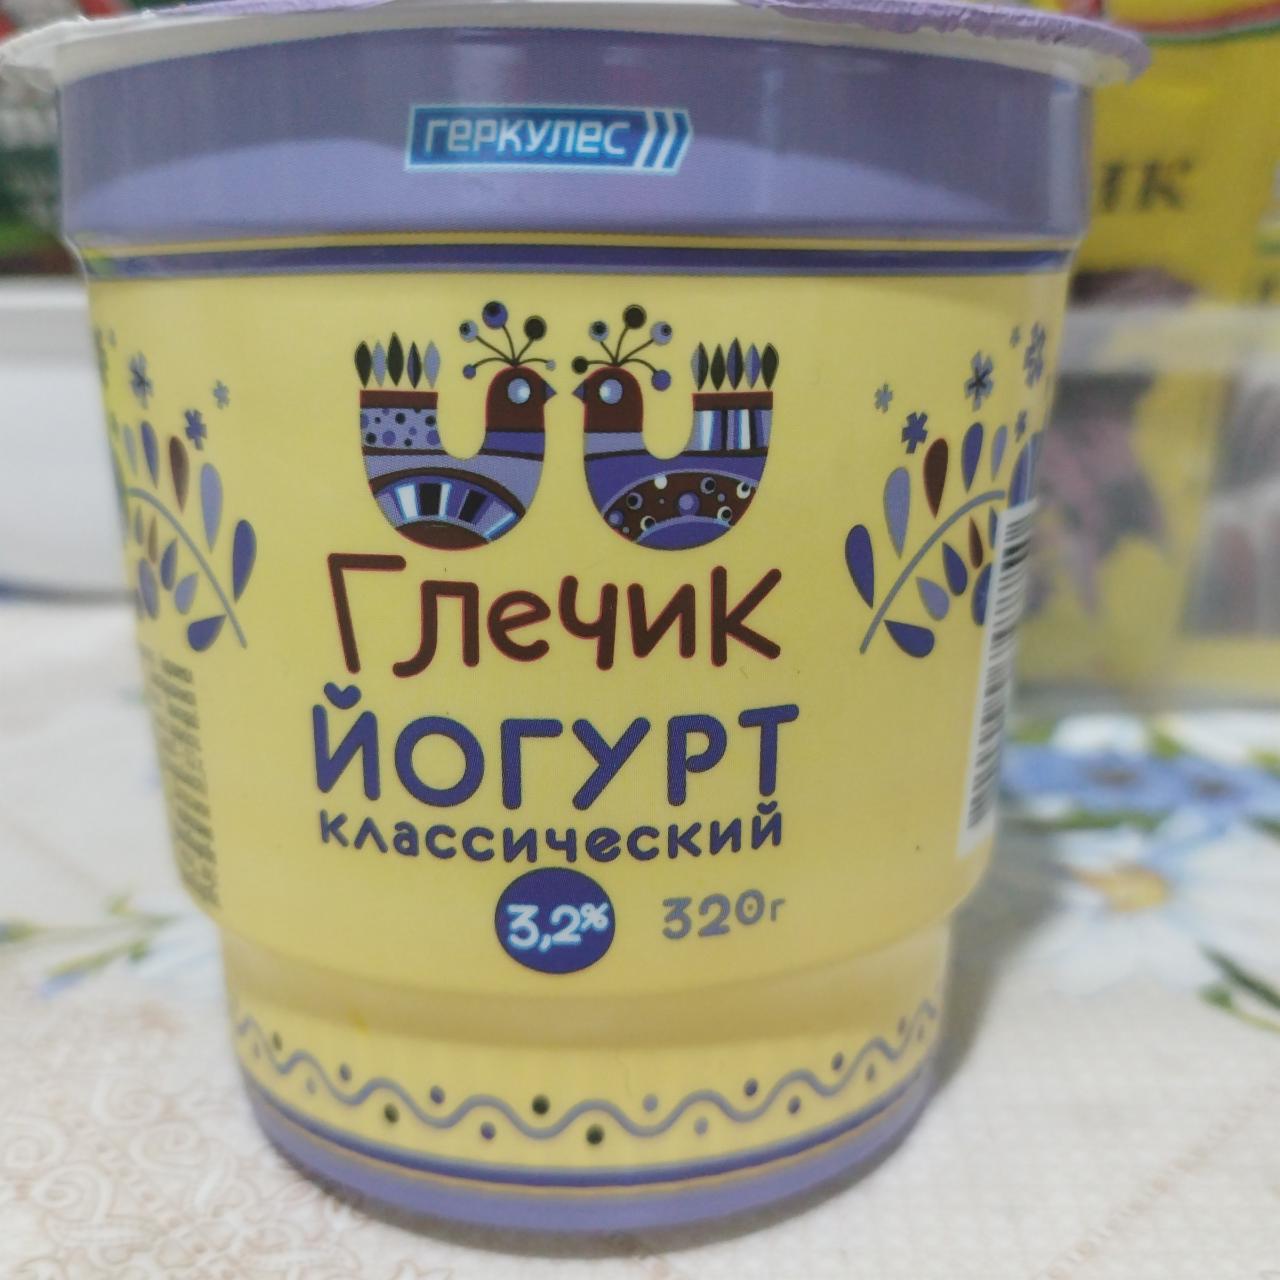 Фото - Греческий йогурт классический 3.2% Геркулес